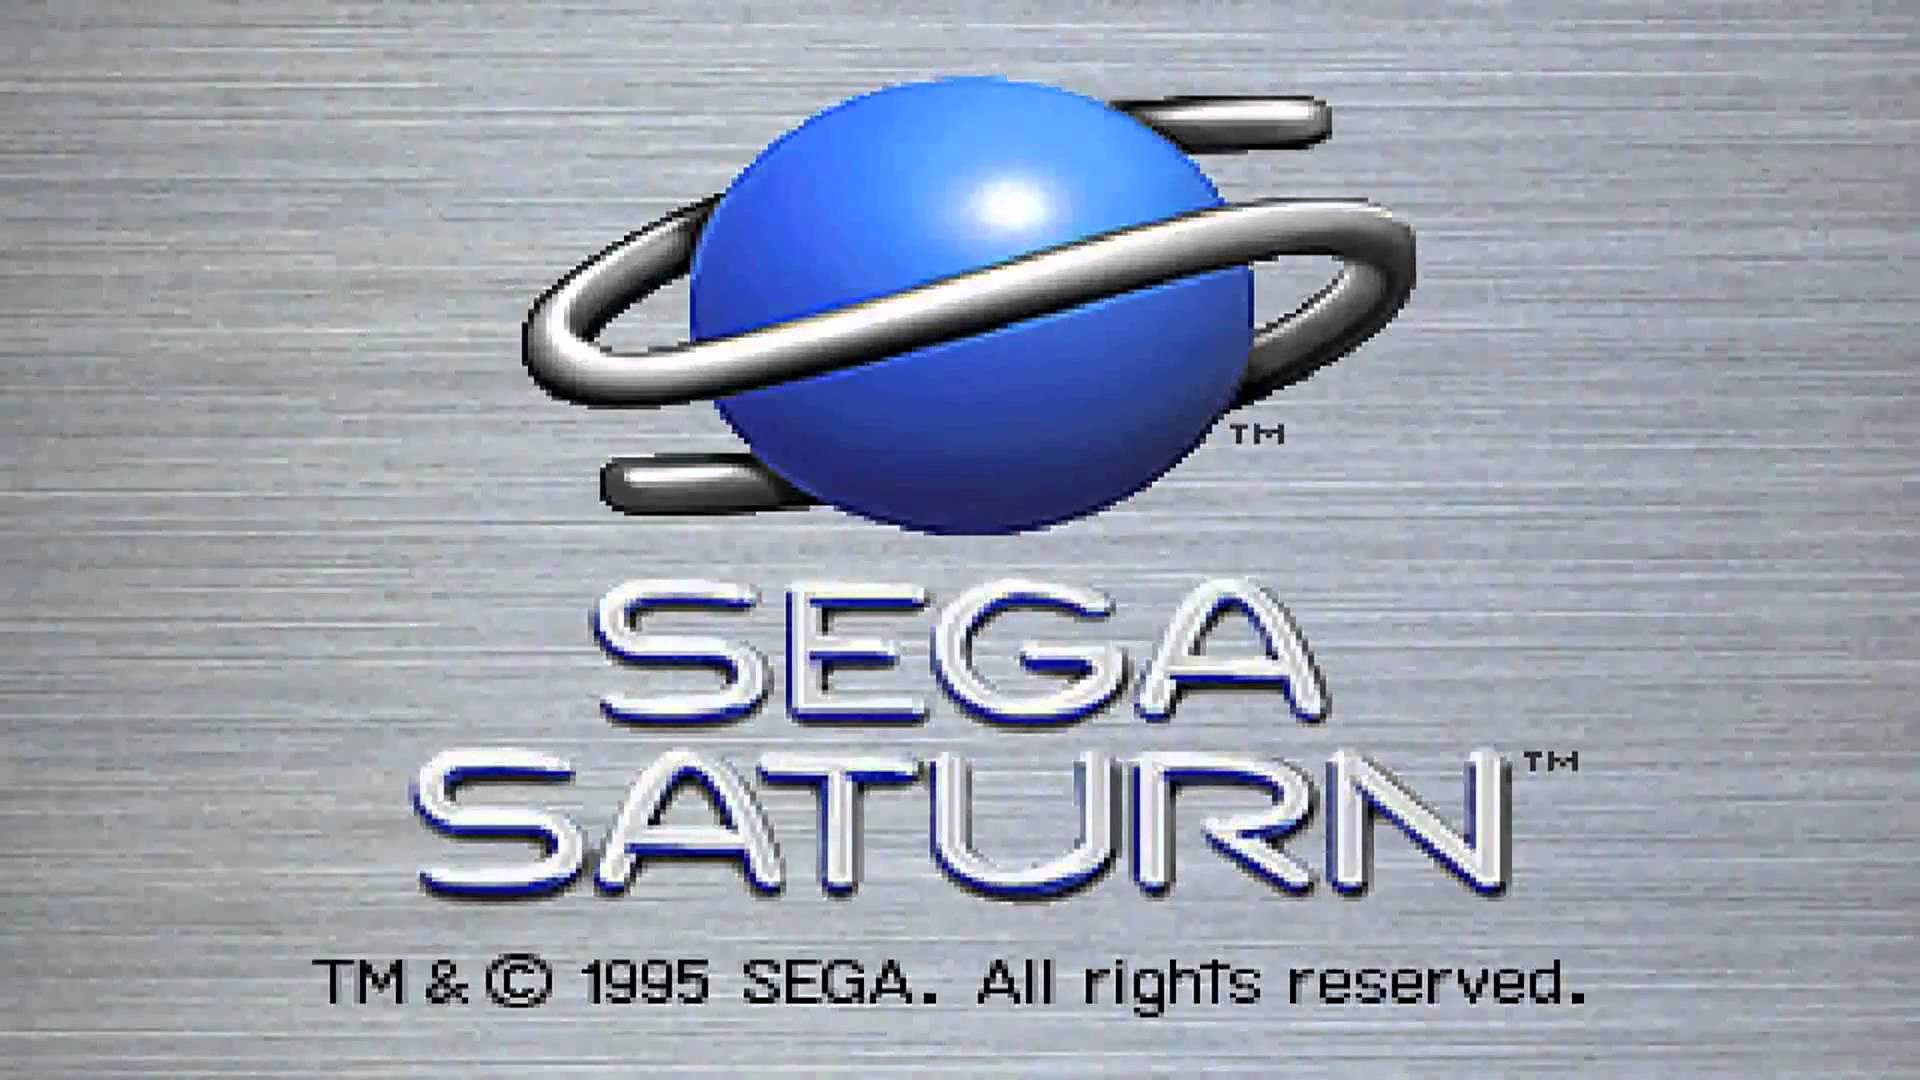 The Great Sega Saturn